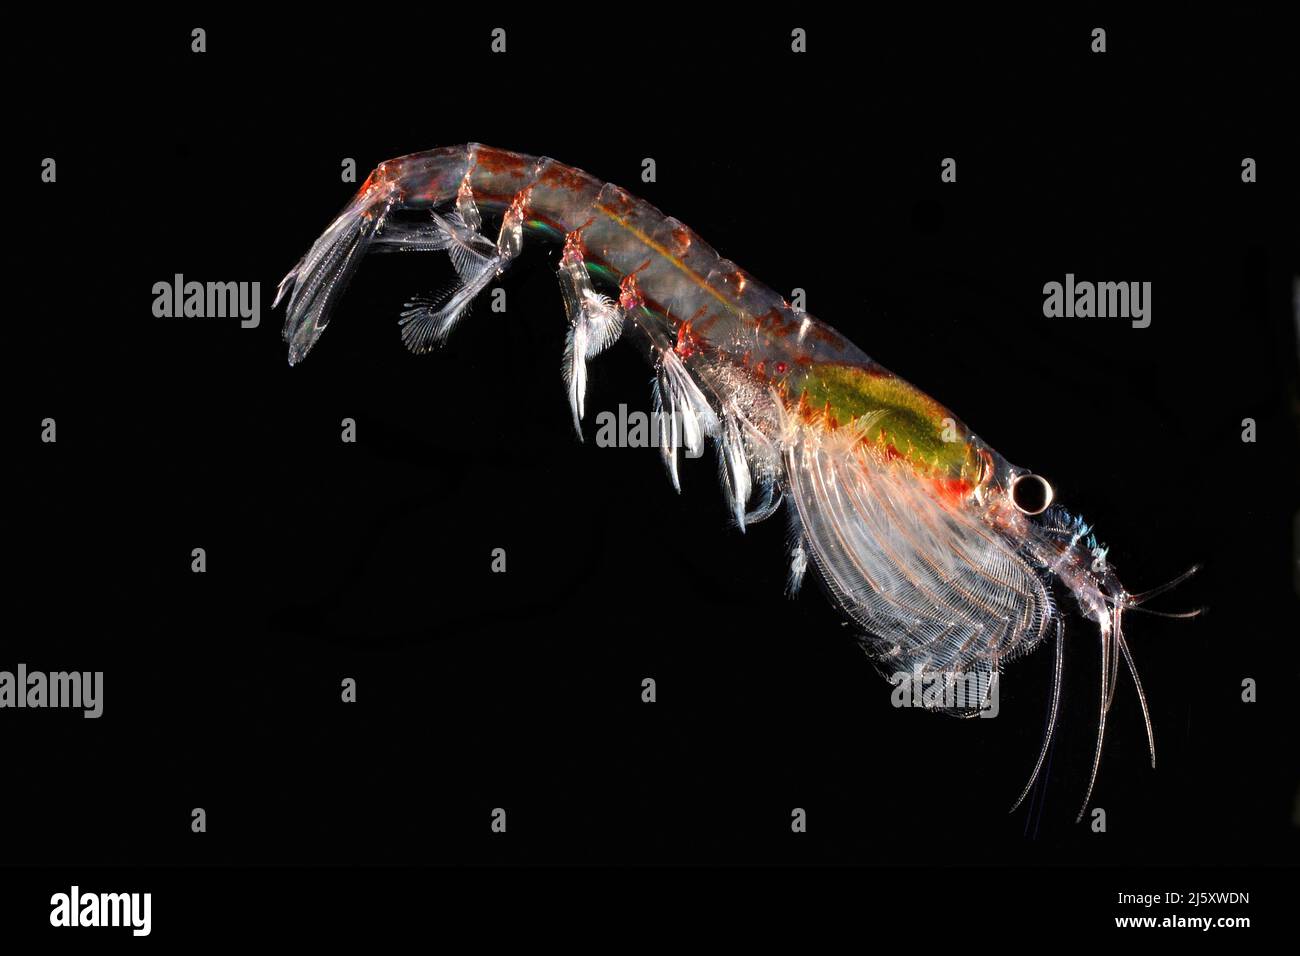 Antarktischer krill (Euphausia superba), in der Antarktis | Antarctic krill (Euphausia superba) dans l'Antarctique Banque D'Images